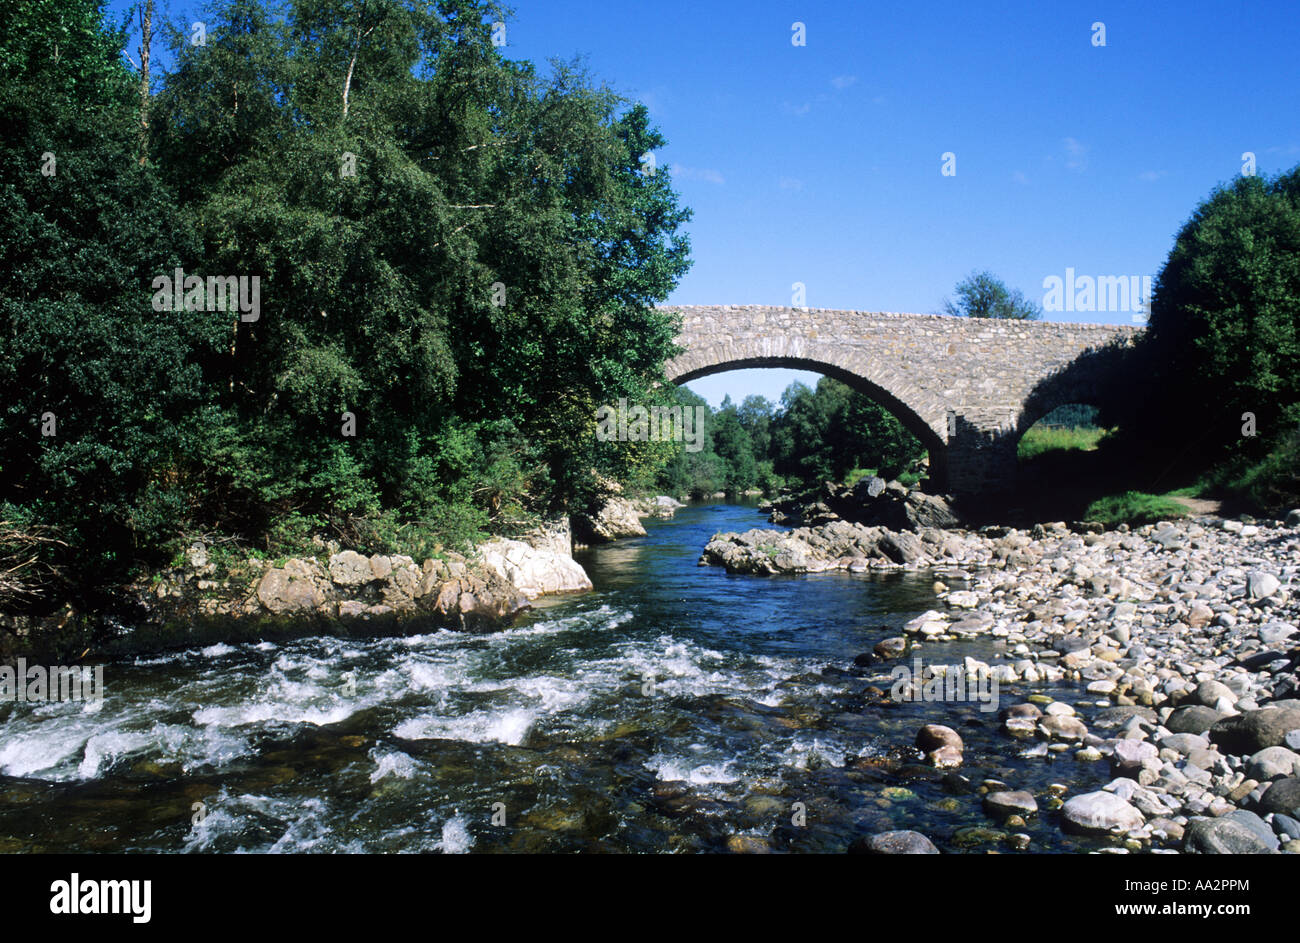 Brücke von Avon, Tomintoul, Ballindalloc, Grampian Region, Schottland, UK, Heerstraße errichtet 1754, Fluss, Reisen, Tourismus Stockfoto